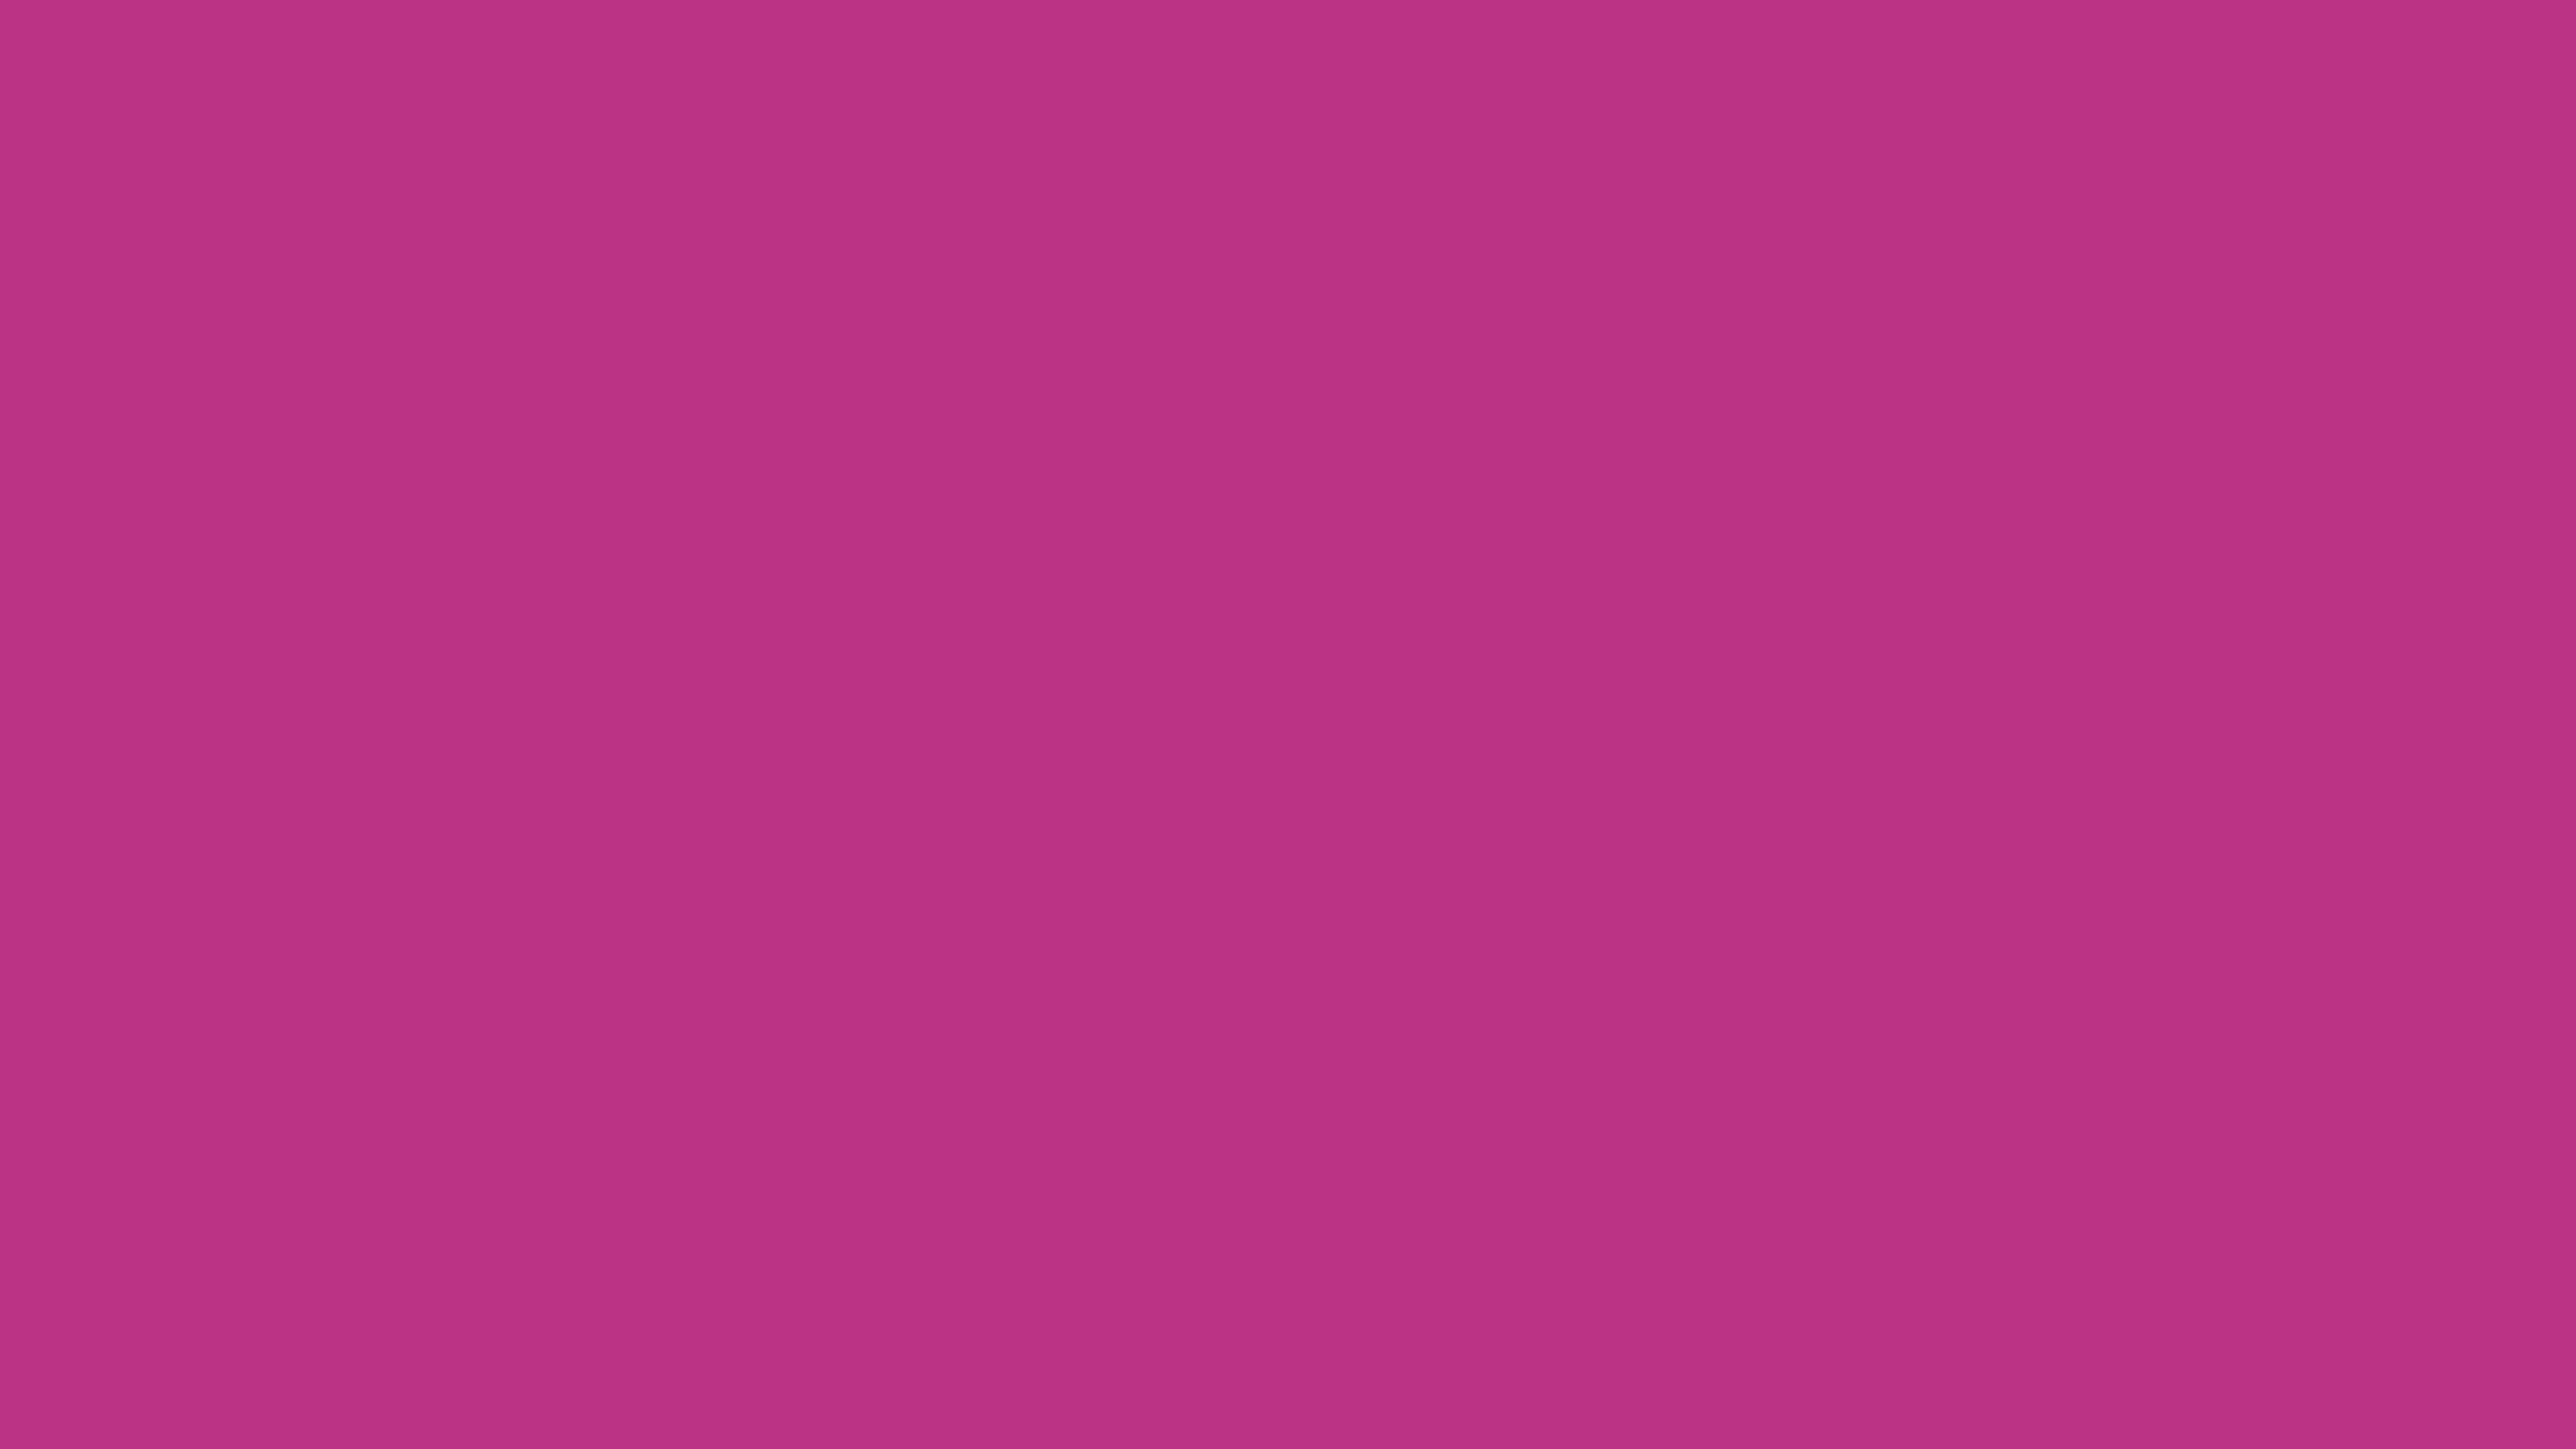 7680x4320 Medium Red-violet Solid Color Background